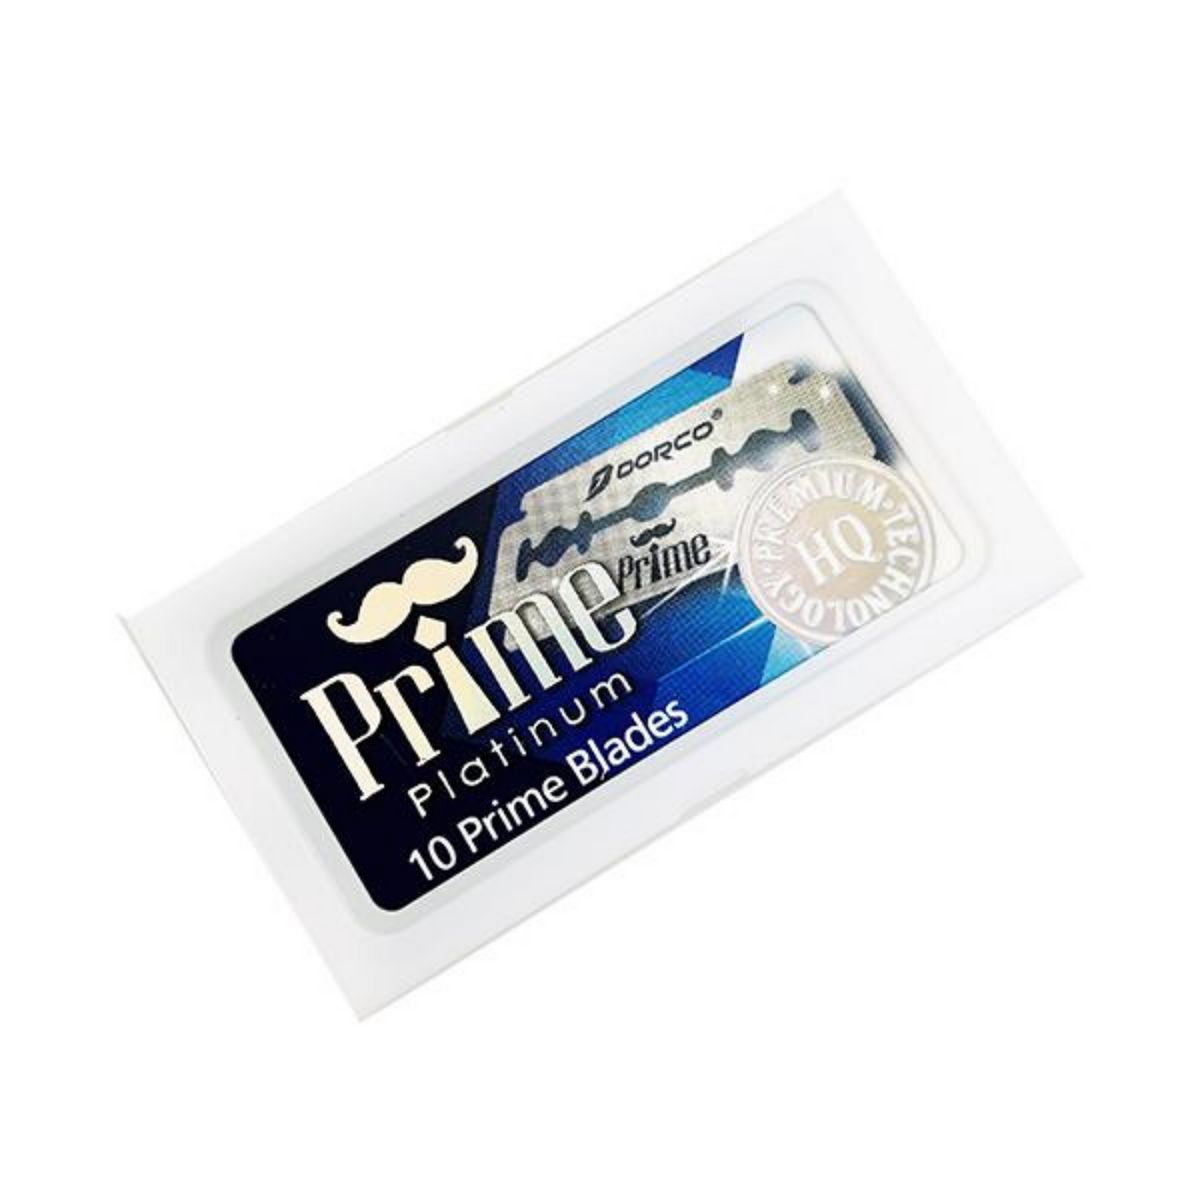 Primary Image of Prime Platinum Blades (10 count)